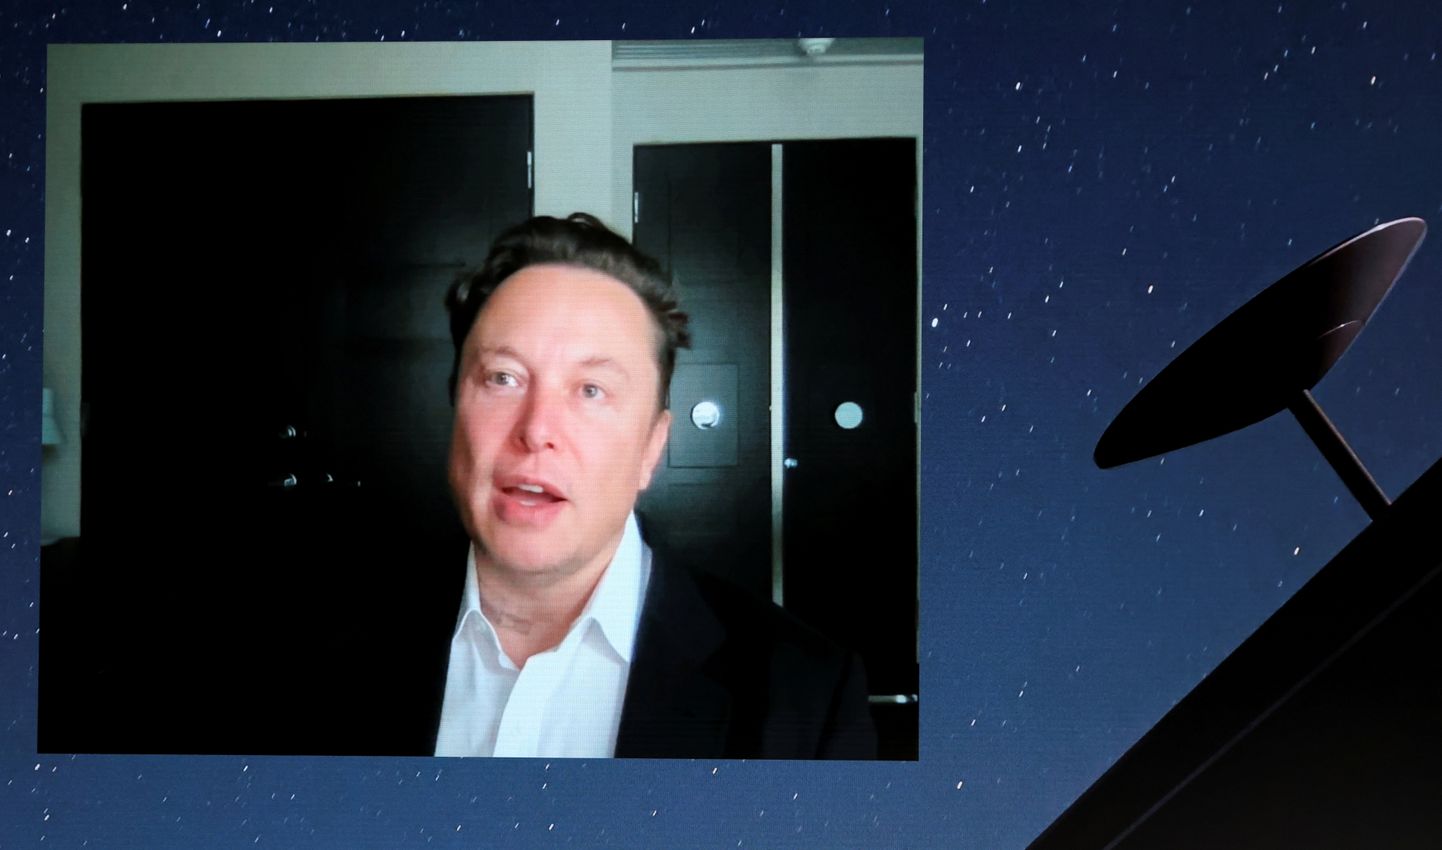 SpaceX-i asutaja Elon Musk videolingi kaudu Starlinki tutvustamas.